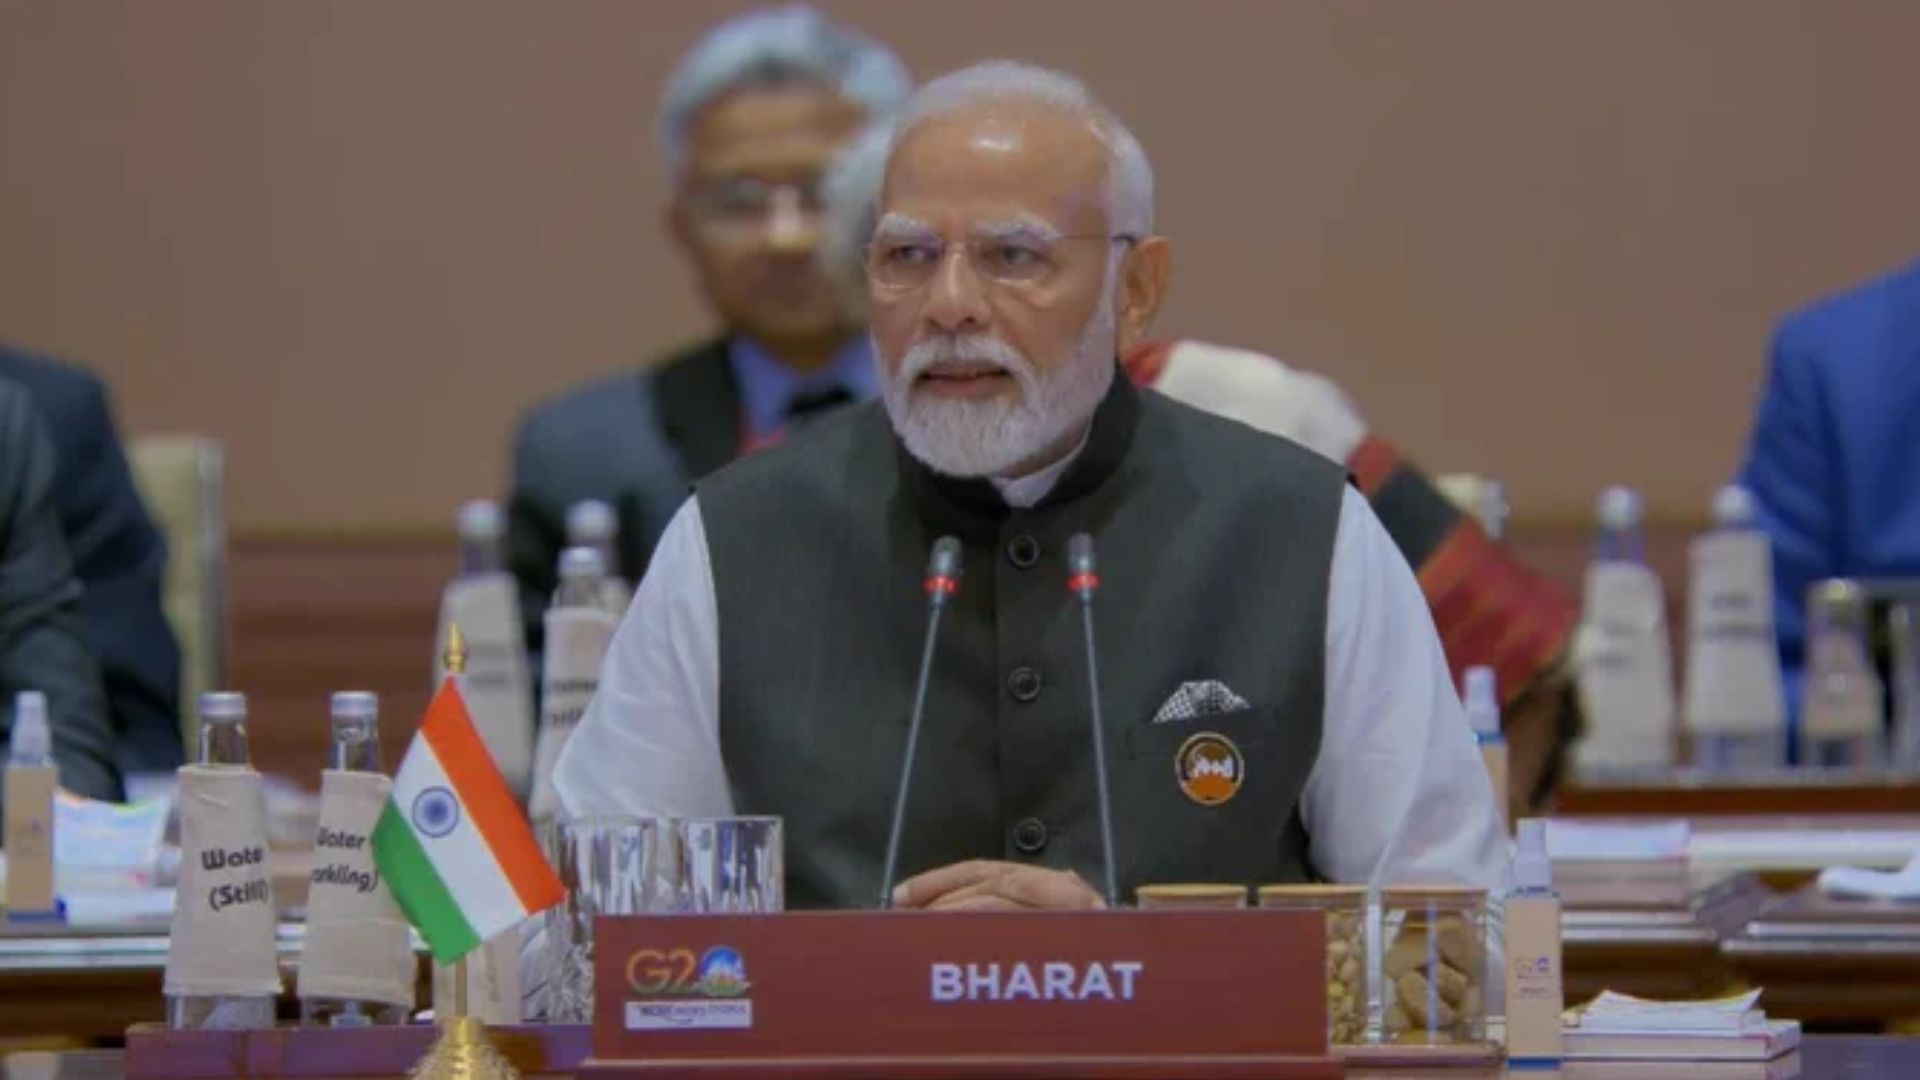 G20 Summit: दूसरे सत्र में घोषणापत्र को मिली मंजूरी, भारत मंडपम में जुटे विश्व के दिग्गज नेता